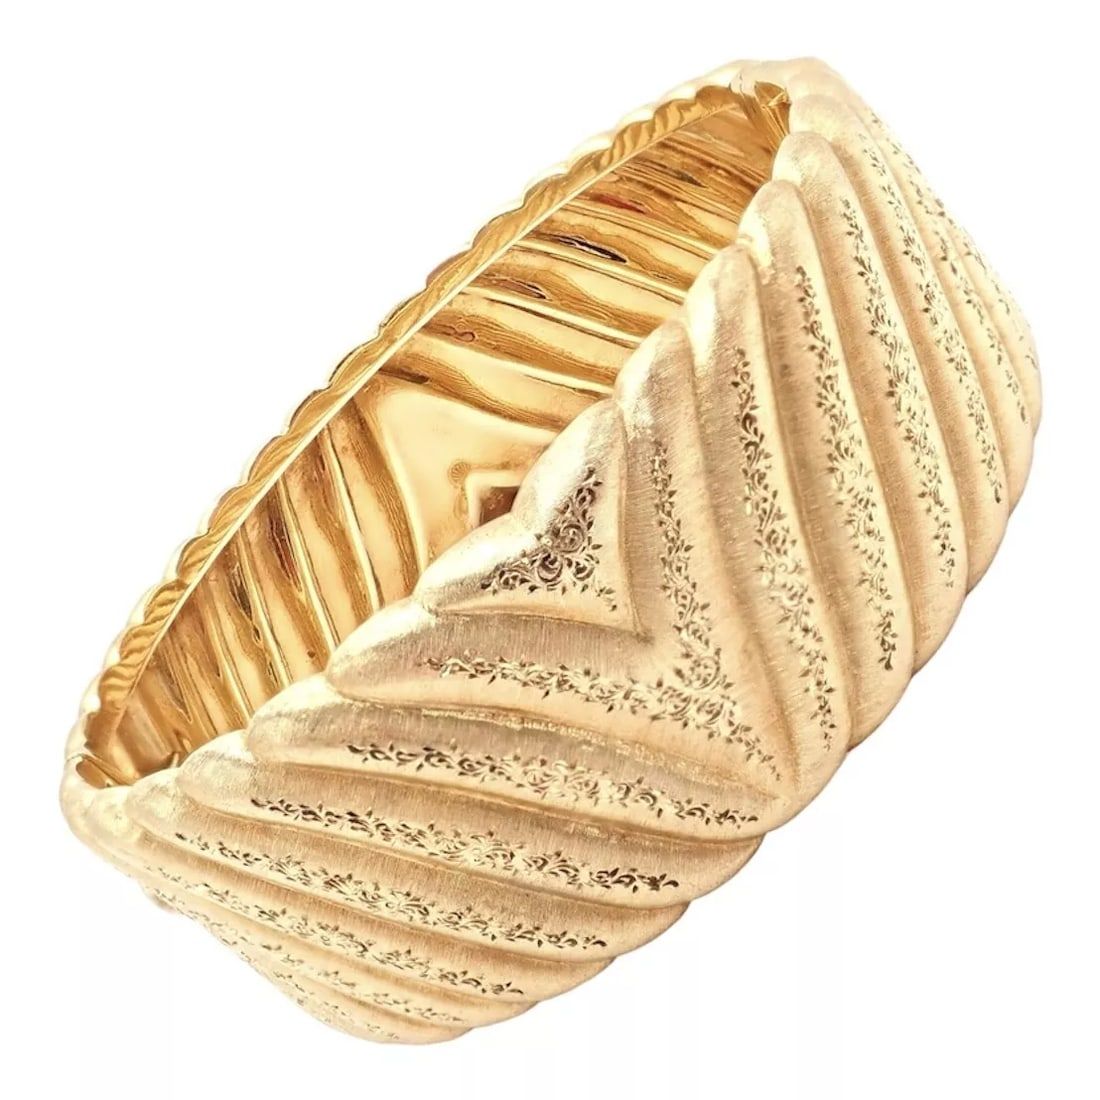 Mario Buccellati 18K gold wide cuff bracelet, estimated at $20,000-$24,000 at Jasper52.